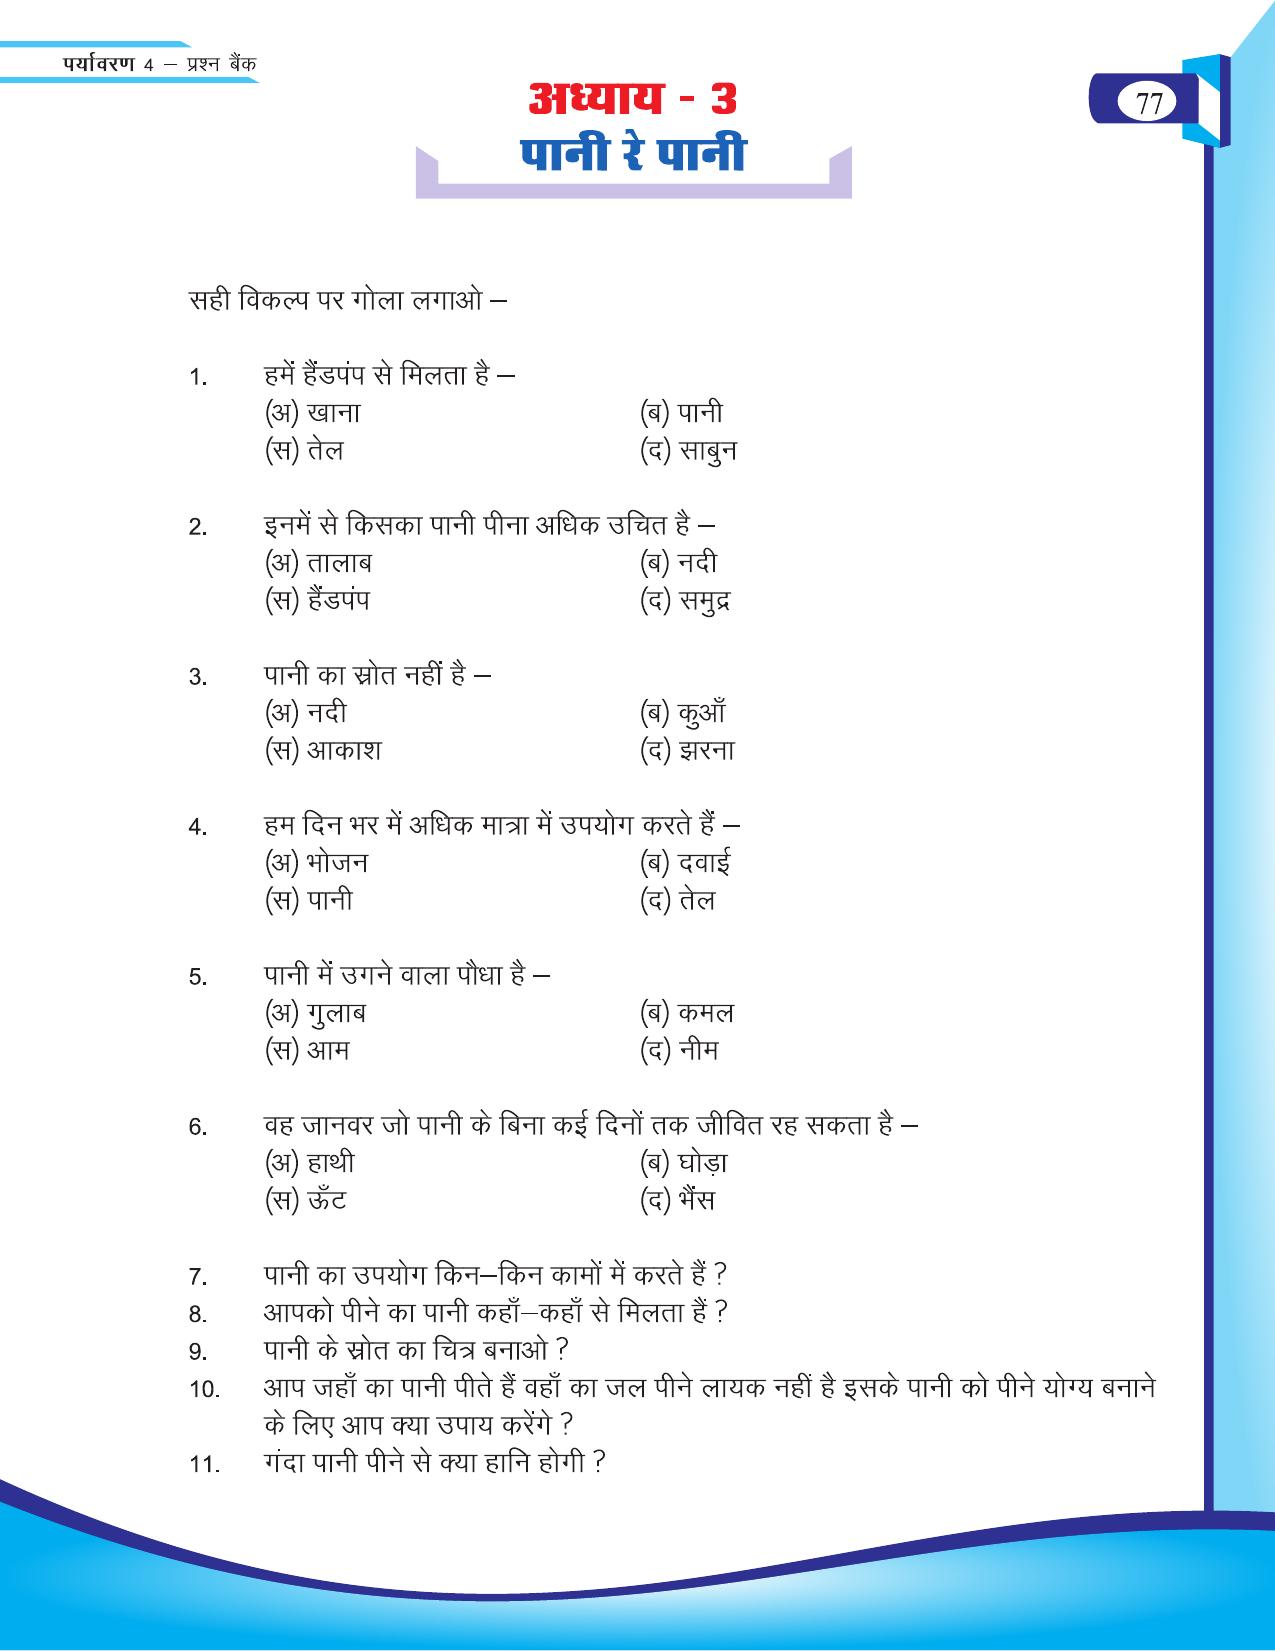 Chhattisgarh Board Class 4 EVS Question Bank 2015-16 - Page 6